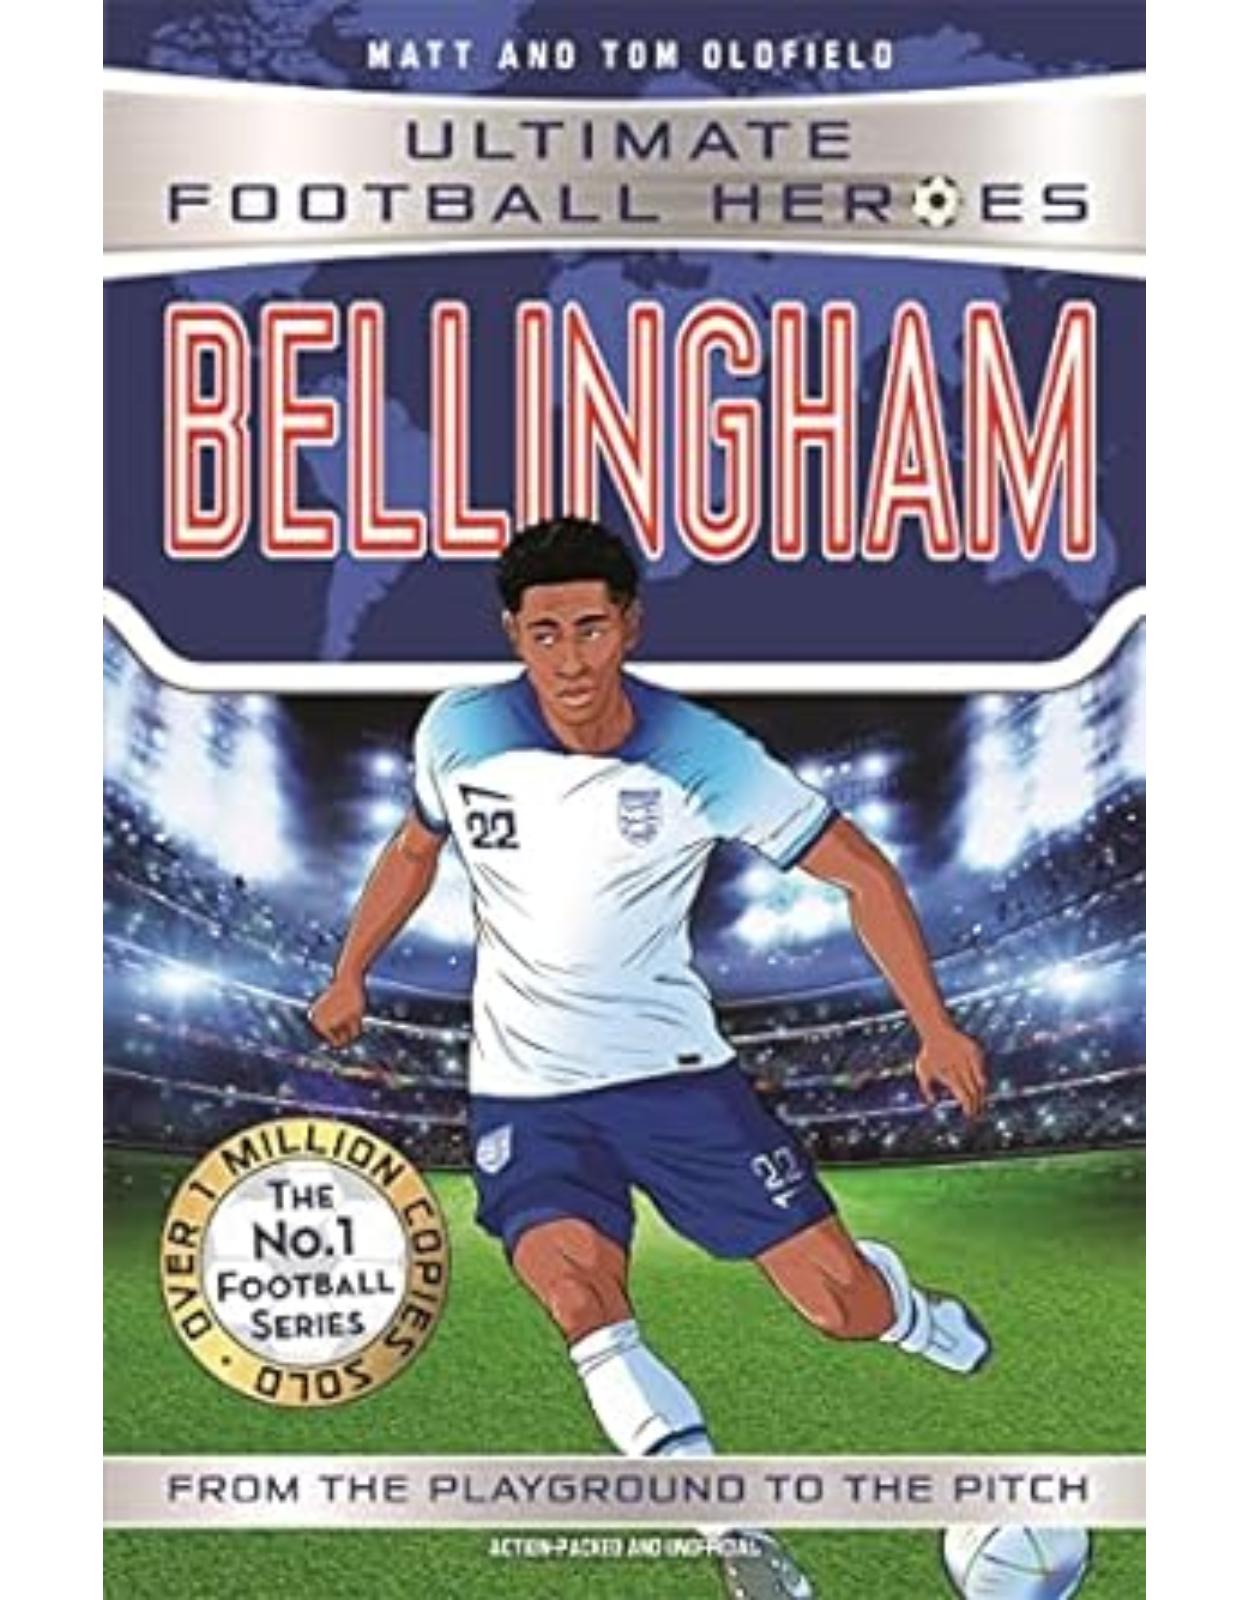 Bellingham (Ultimate Football Heroes - The No.1 football series)